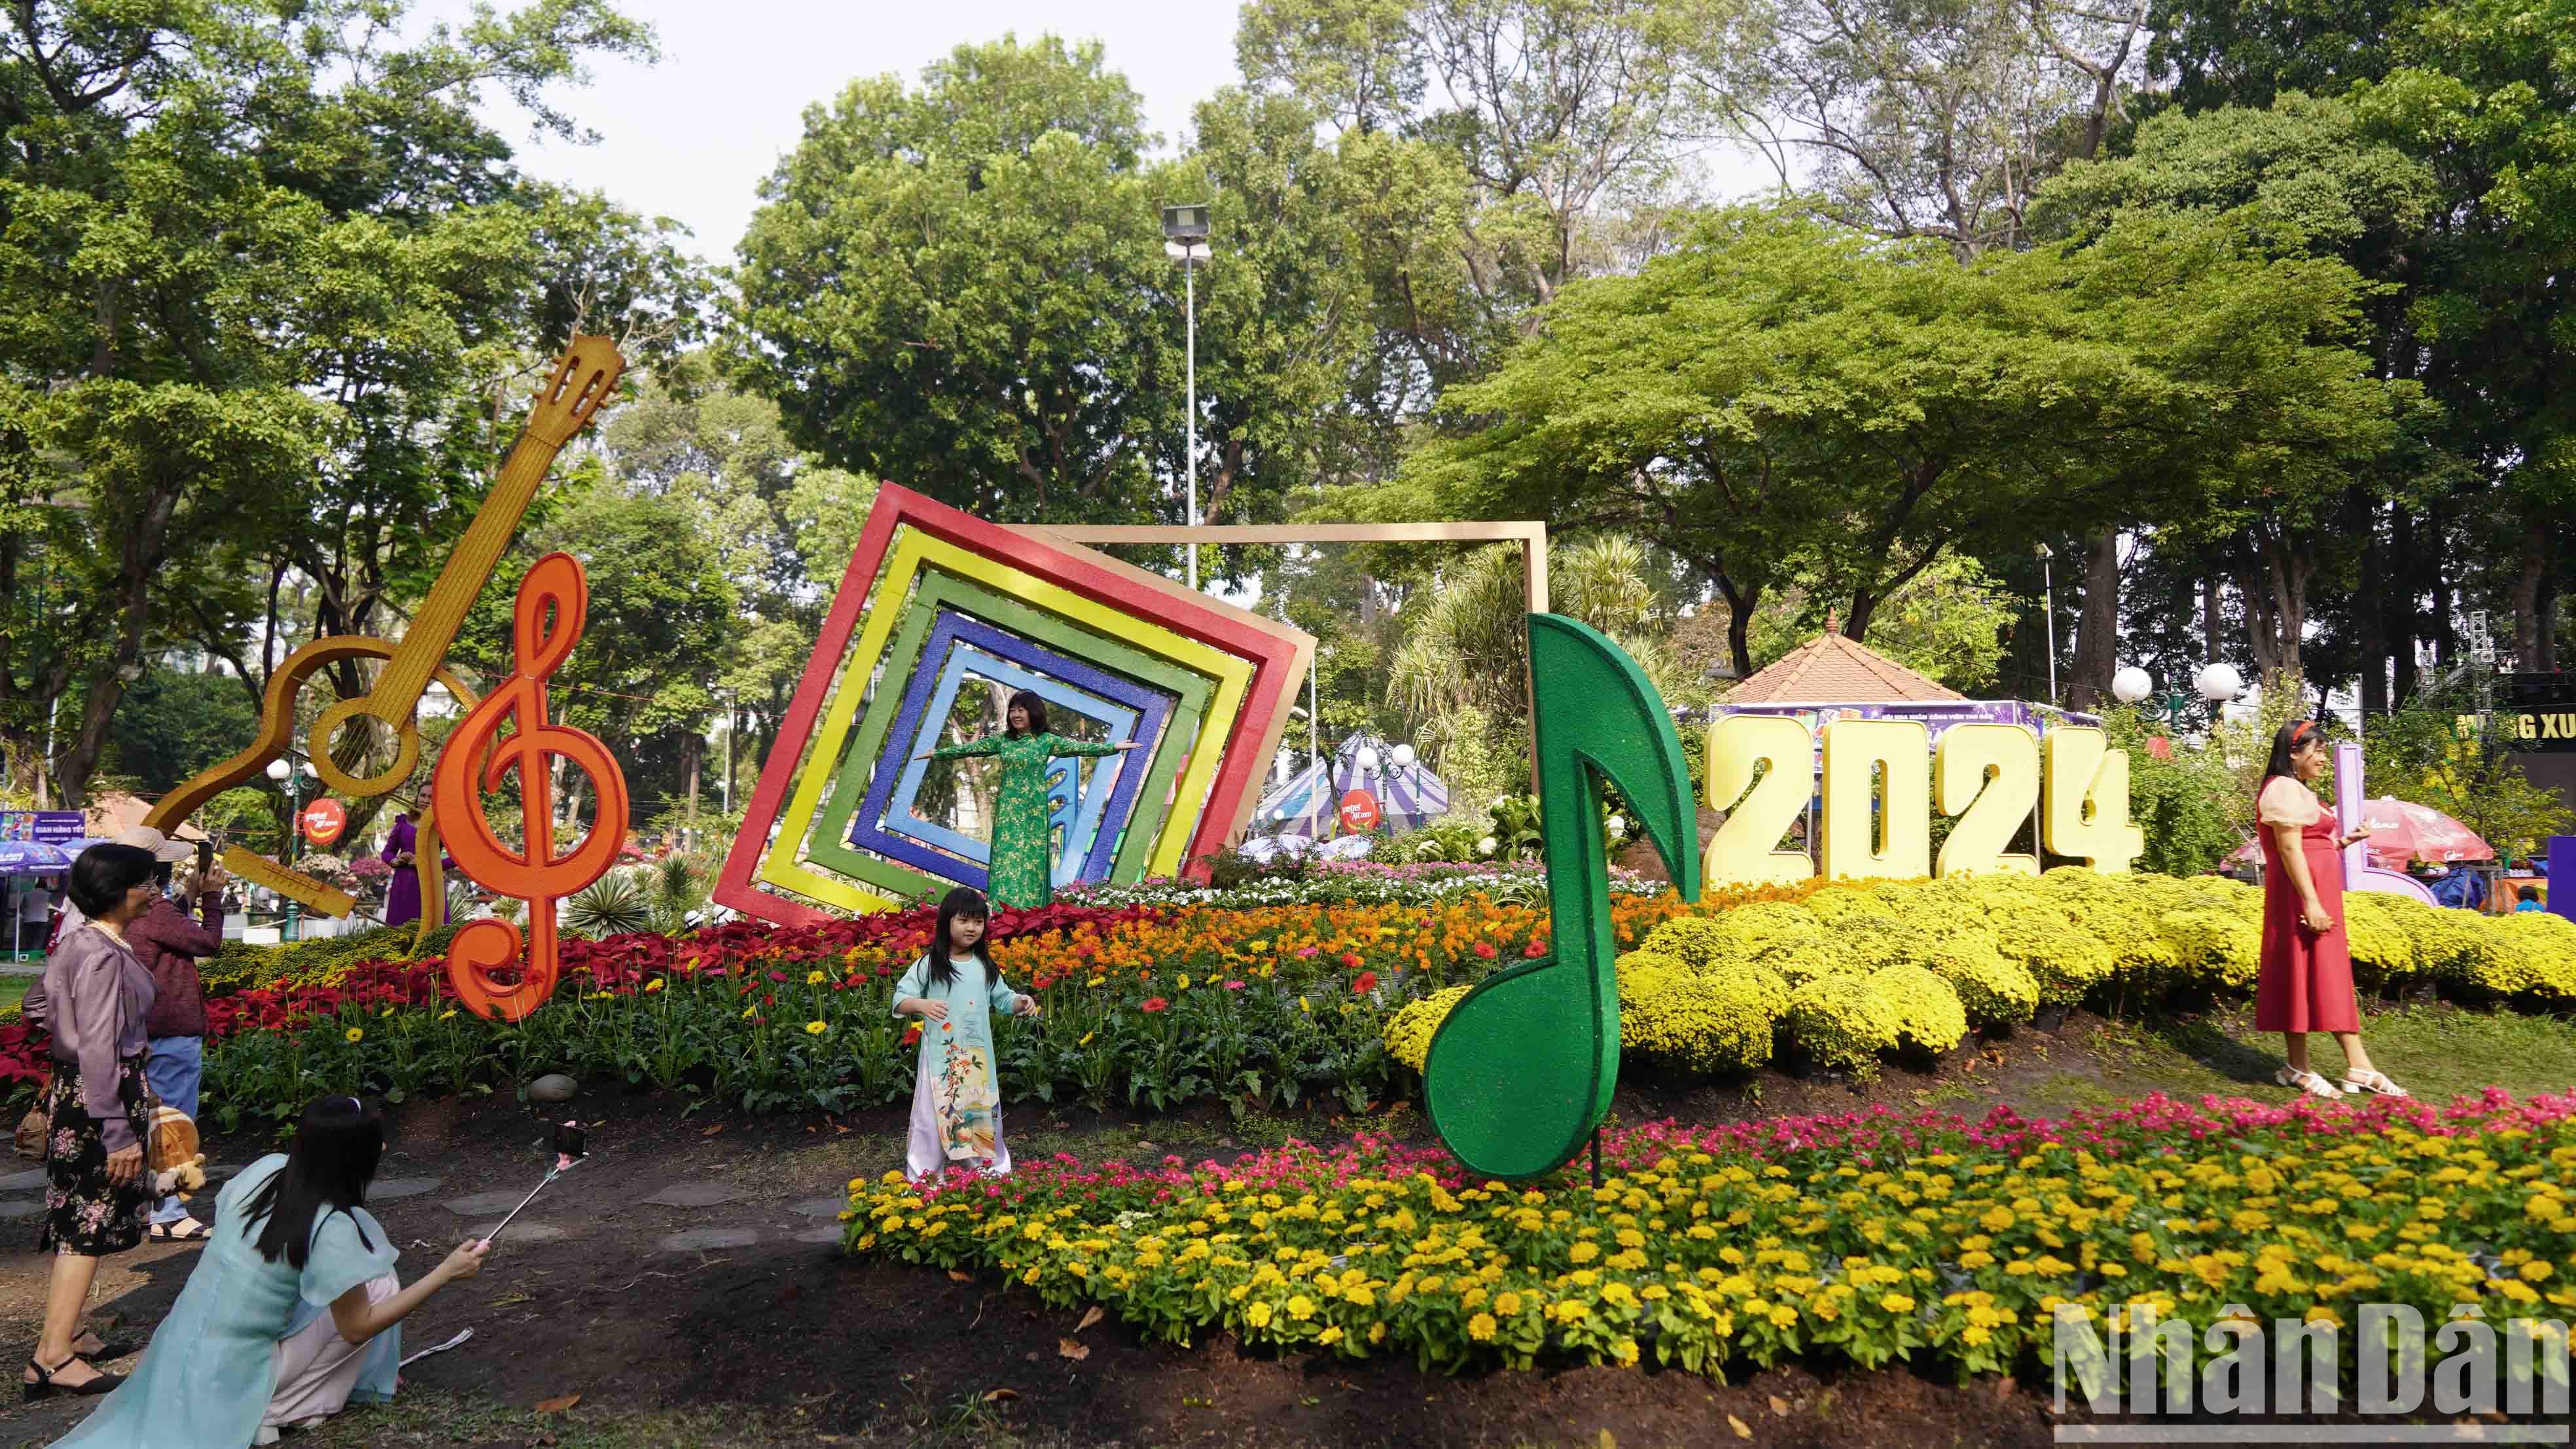 Hội hoa xuân lần thứ 44 được Thành phố Hồ Chí Minh tổ chức tại công viên Tao Đàn với chủ đề "Xuân yêu thương, Tết sum vầy" kéo dài từ ngày 6/2 đến 15/2 (tức 27 tháng Chạp đến mùng 6 Tết).